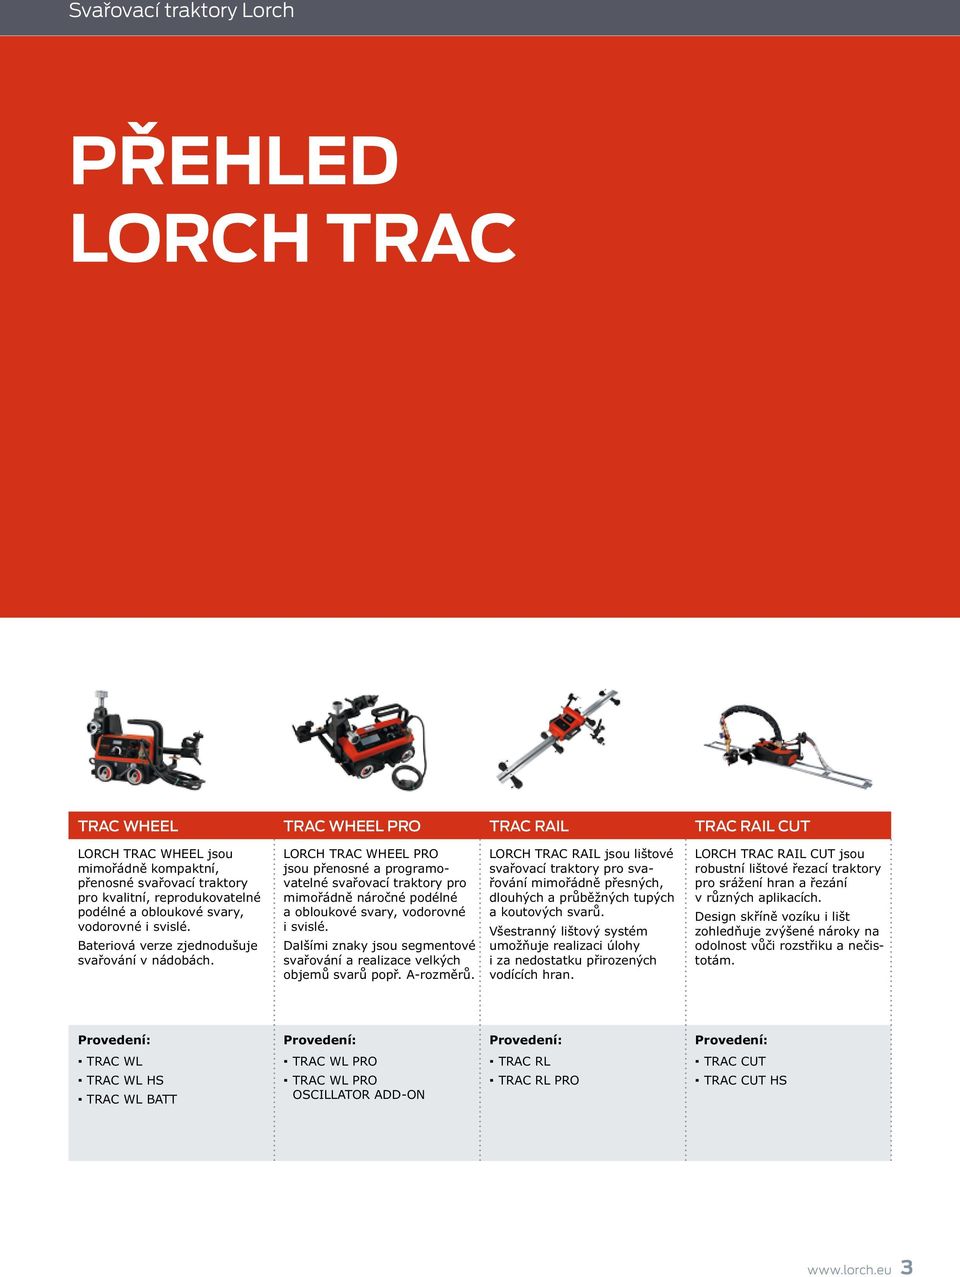 LORCH TRAC WHEEL PRO jsou přenosné a programovatelné svařovací traktory pro mimořádně náročné podélné a obloukové svary, vodorovné i svislé.